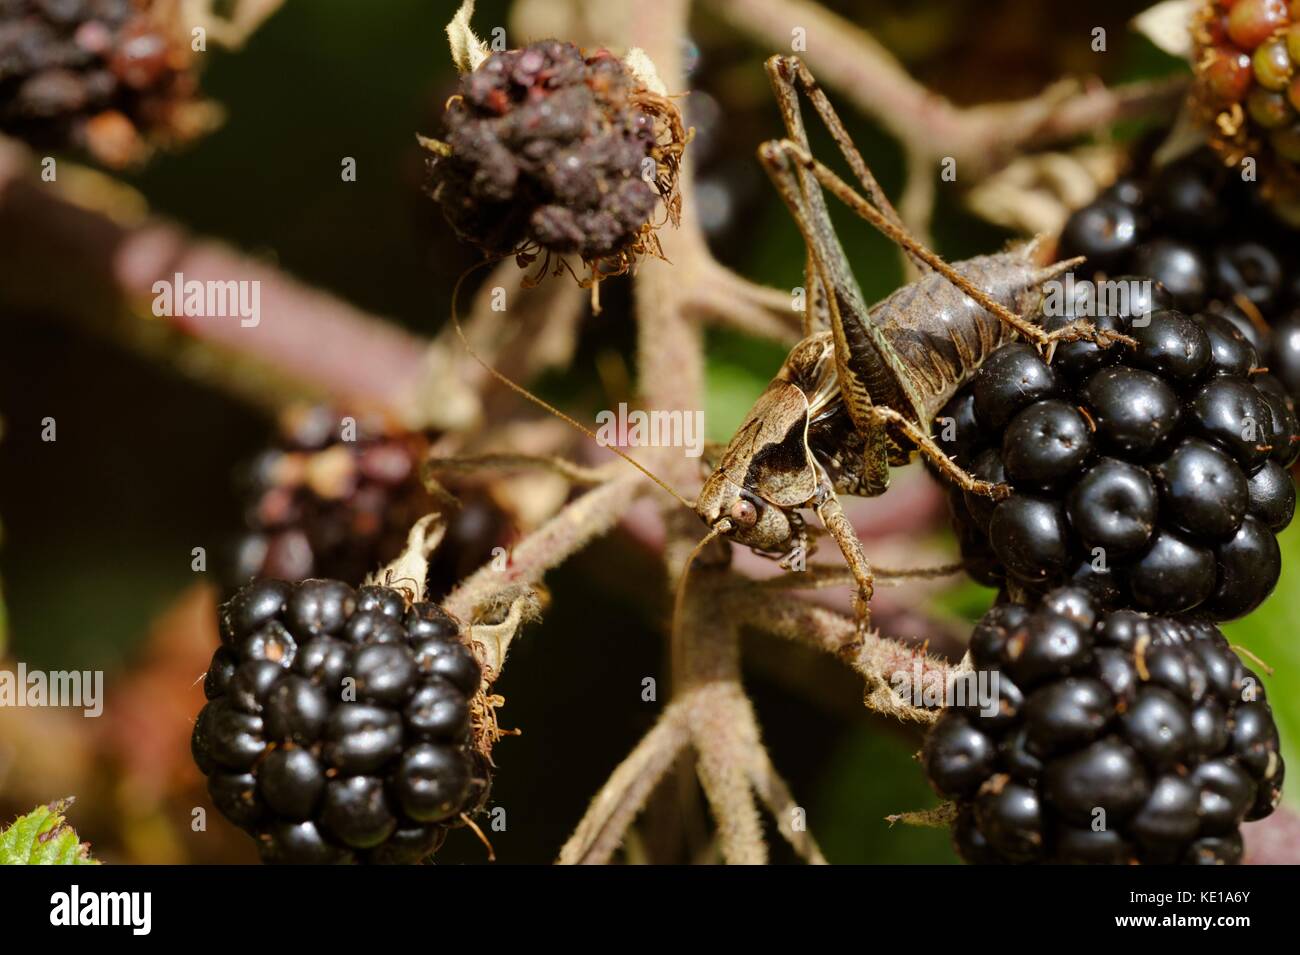 Decticus verrucivorous, Wartbiter Bush Cricket on Blackberries, Wales, UK Stock Photo